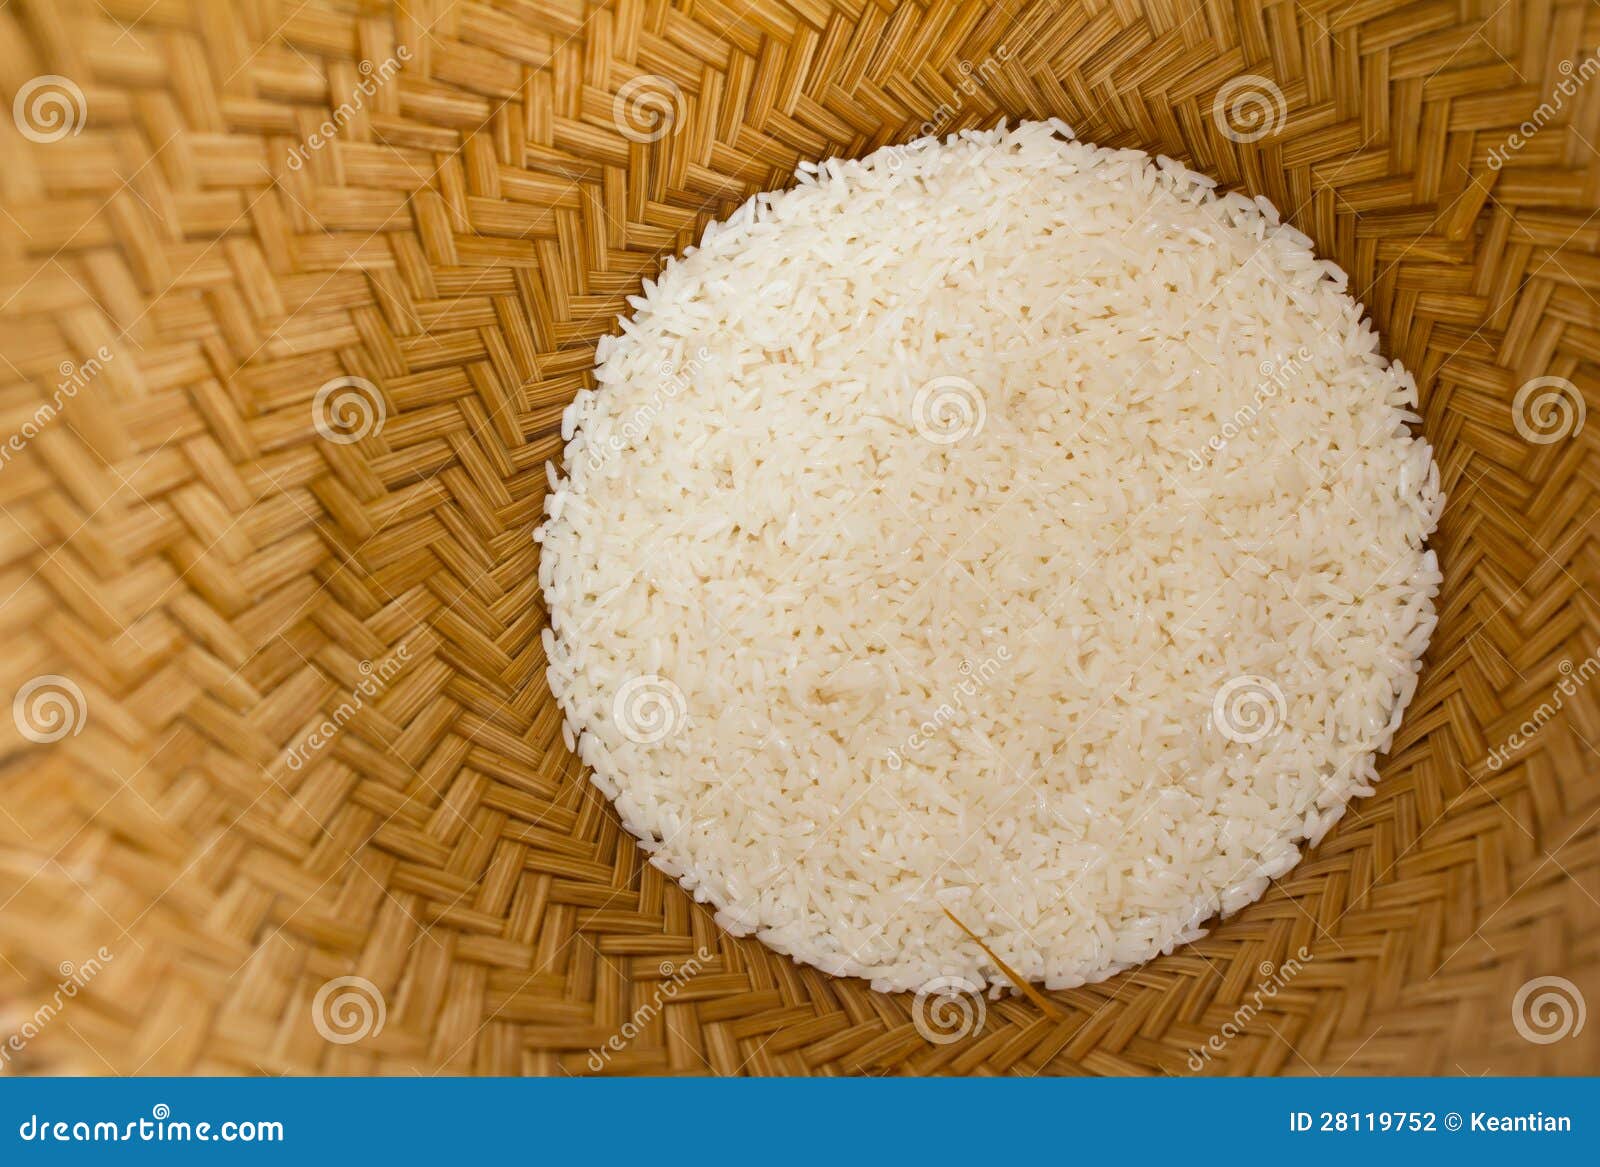 Surowi ryż w bambusowym koszu. Surowi ryż w bambusowych koszach przygotowywali dekatyzować upałem wrząca woda.